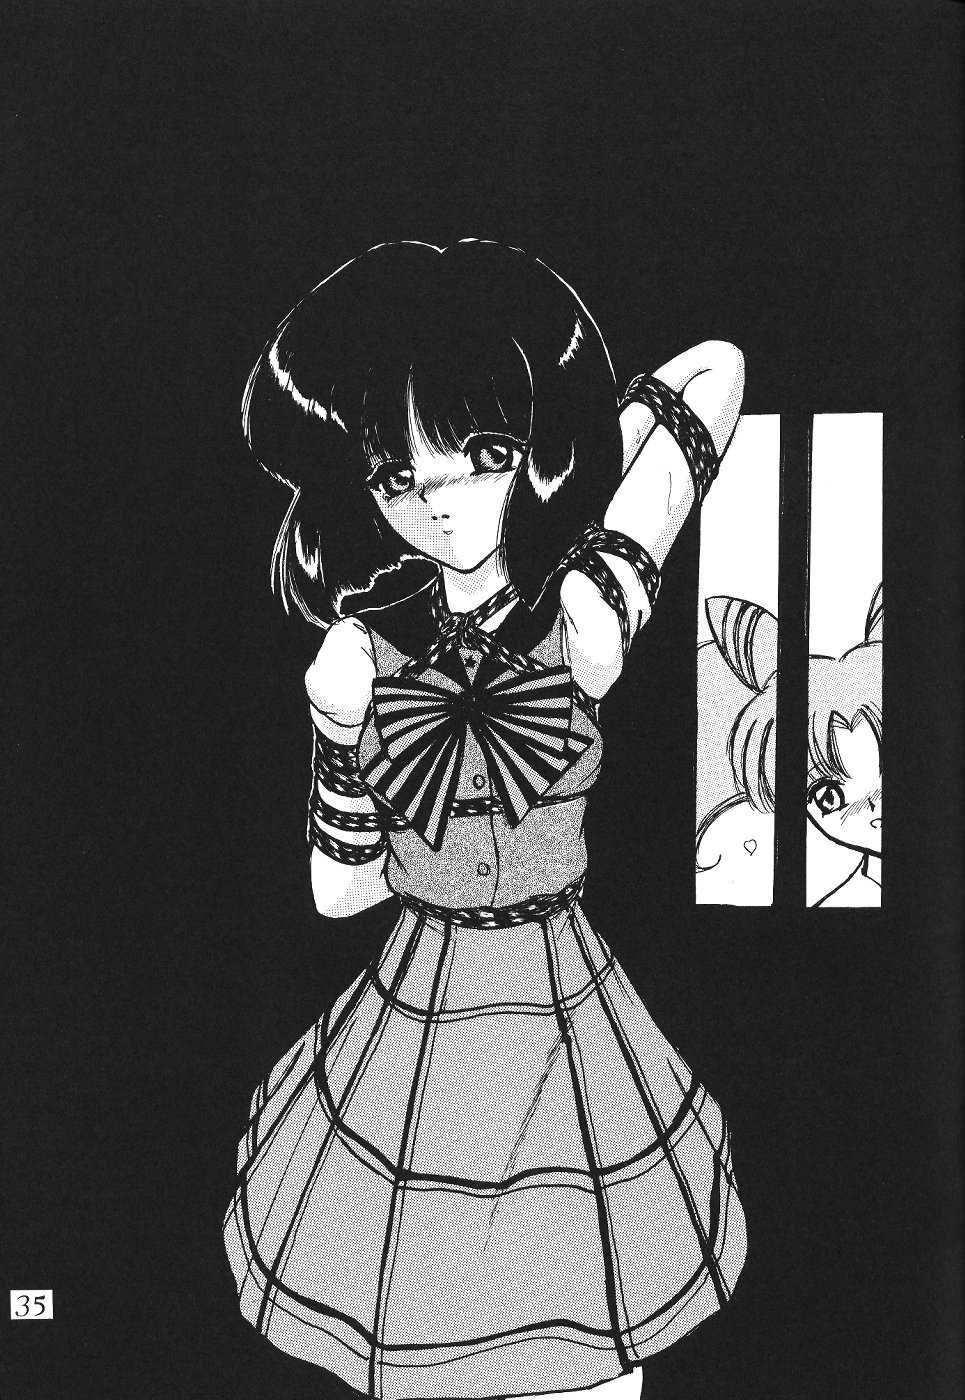 Saateiseibaazutoriito 2D Shooting - Silent Saturn 12 (Sailor Moon) 